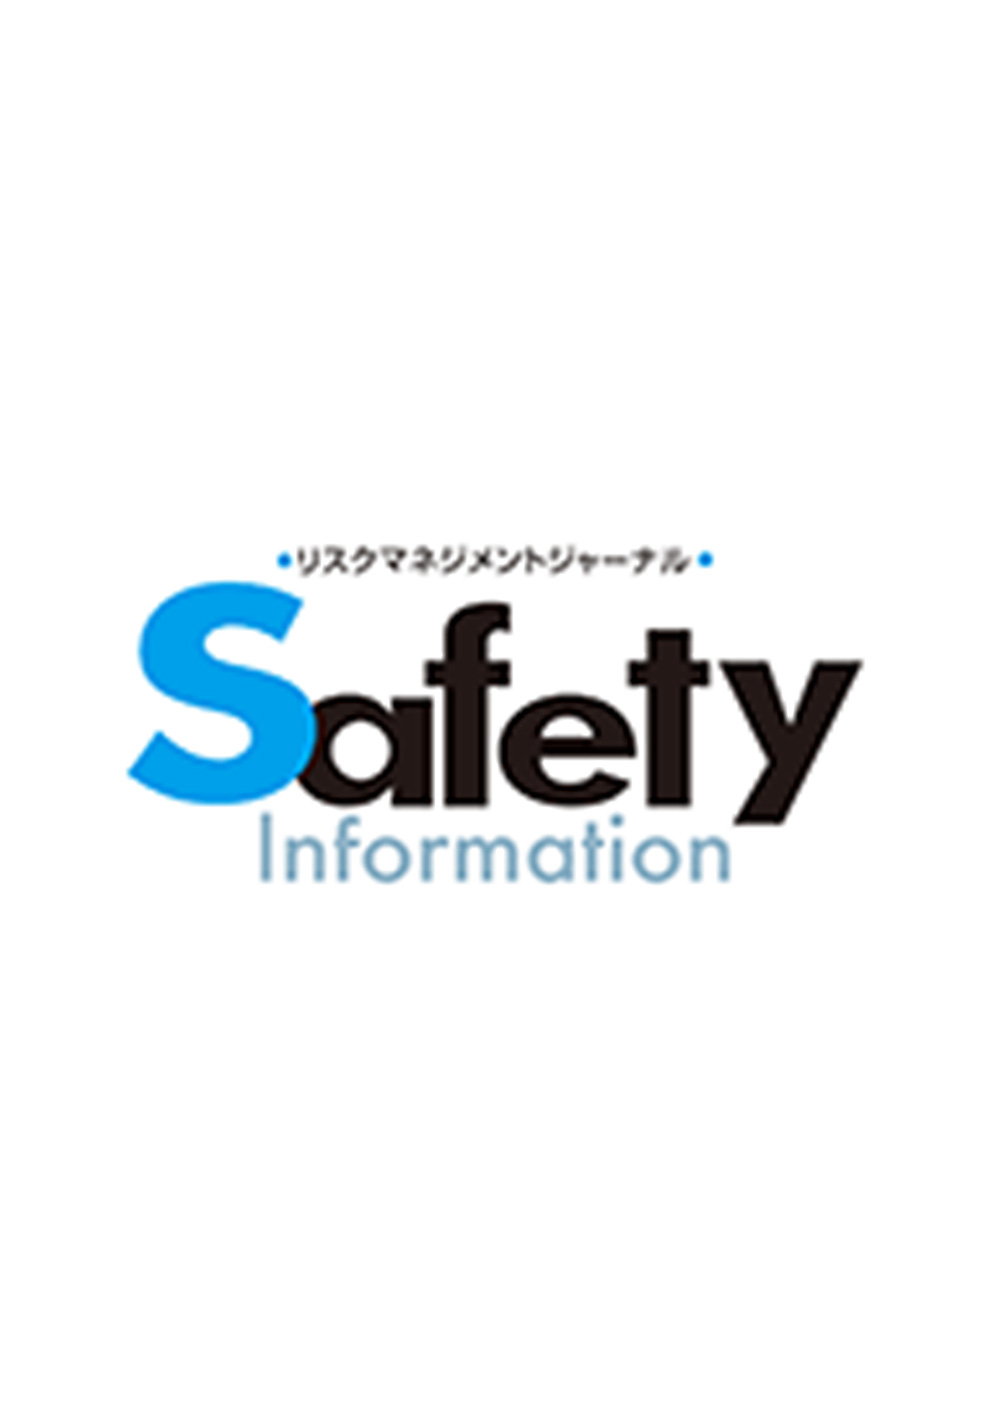 リスクマネジメントジャーナル 「Safety Information」